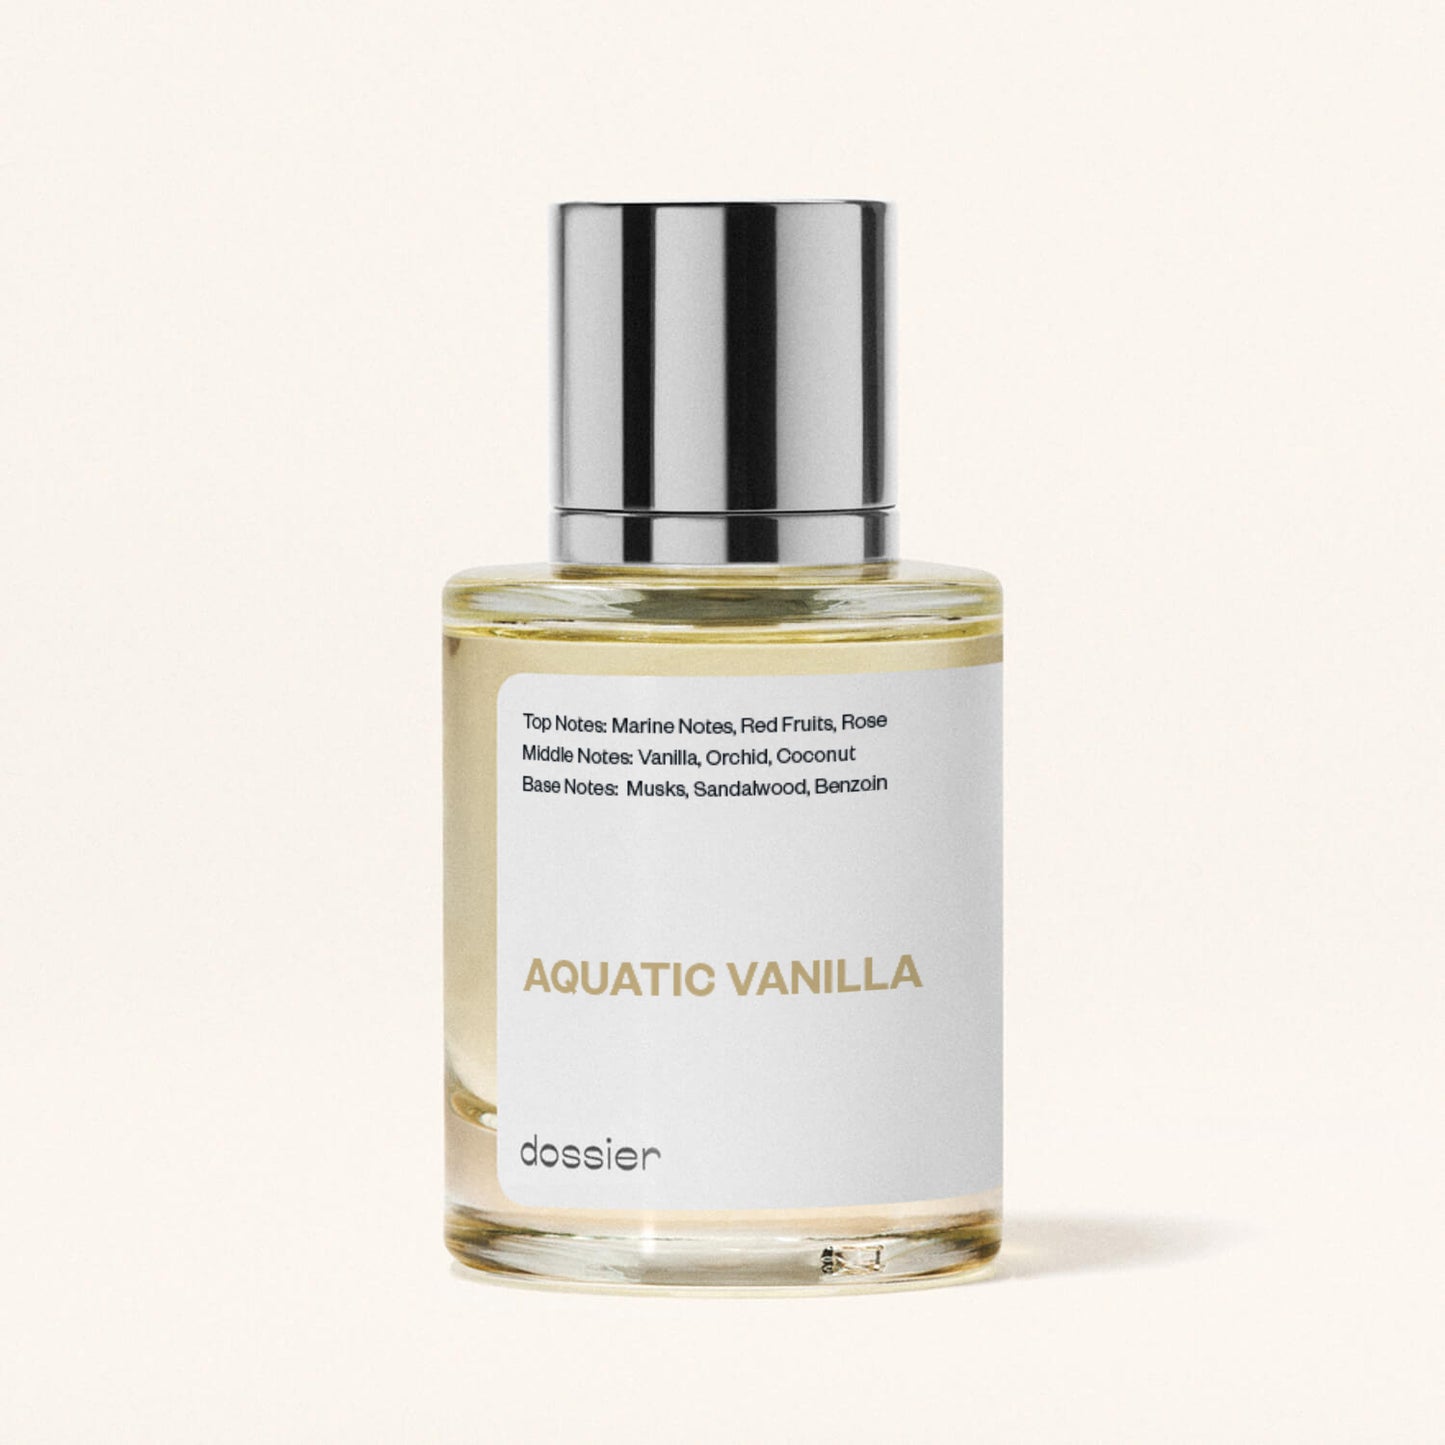 Aquatic Vanilla